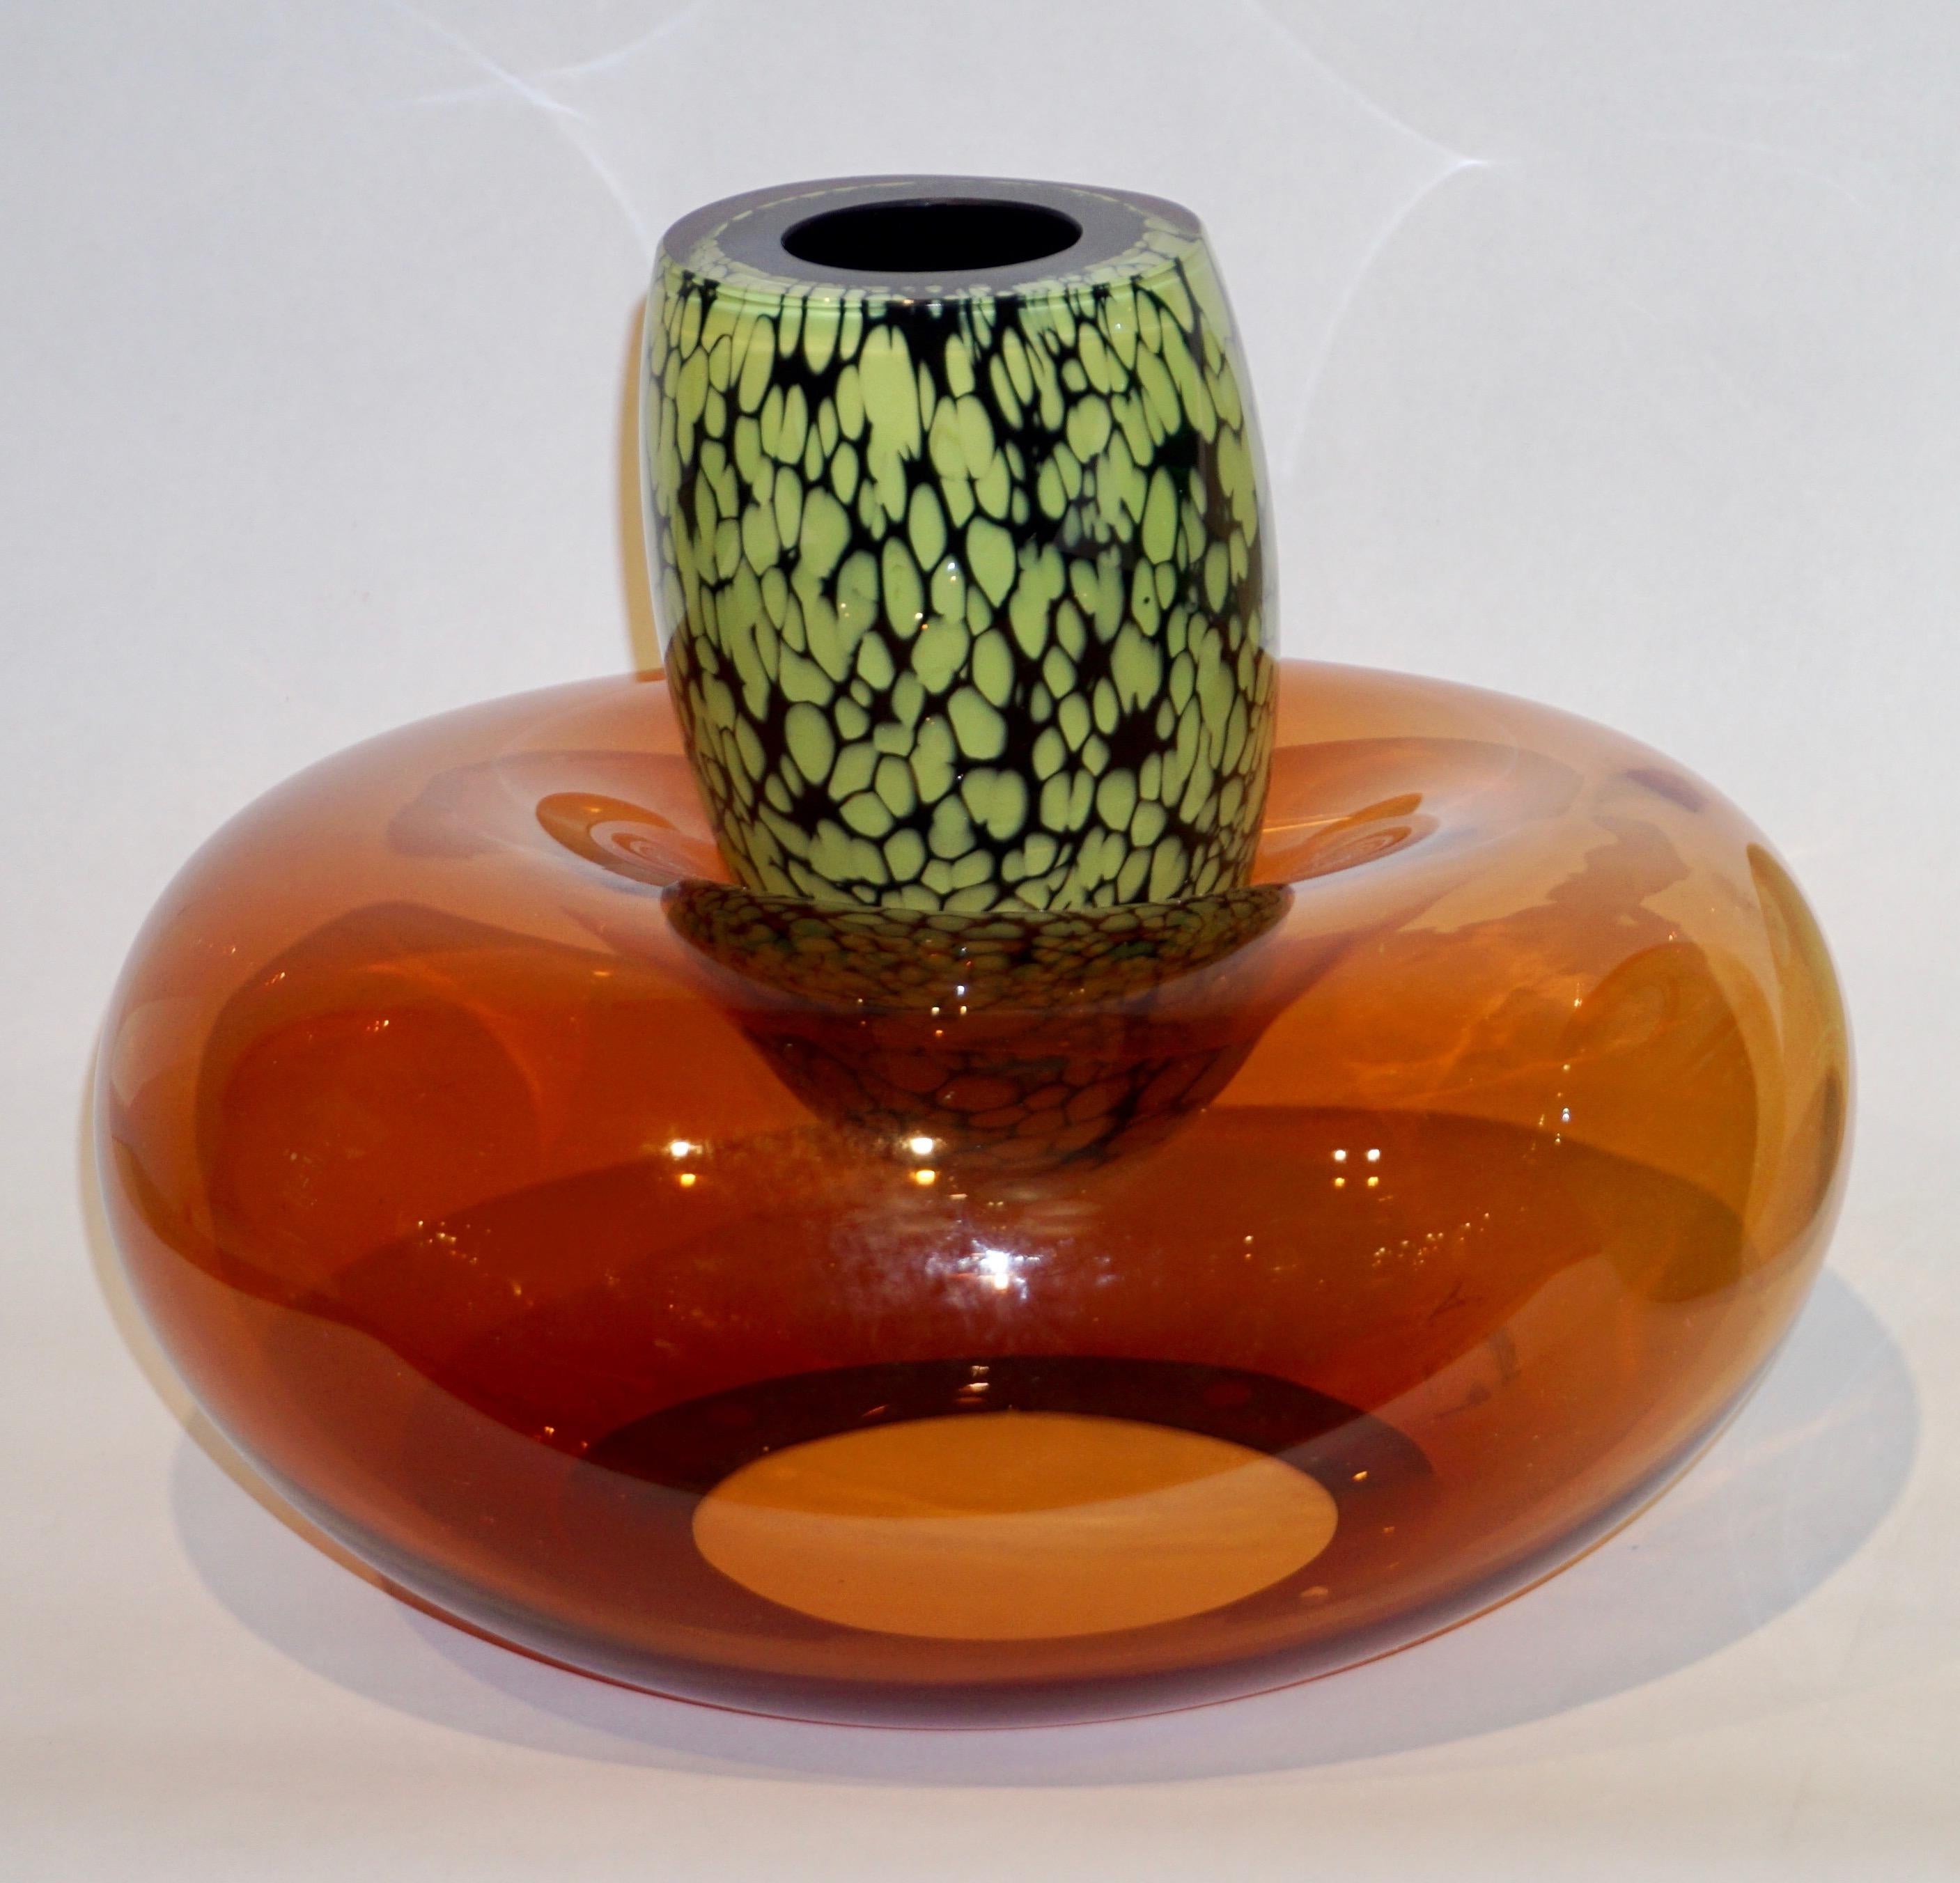 Murano Glass Hilton McConnico by Formia 1990s Italian Orange Murano Art Glass Vase